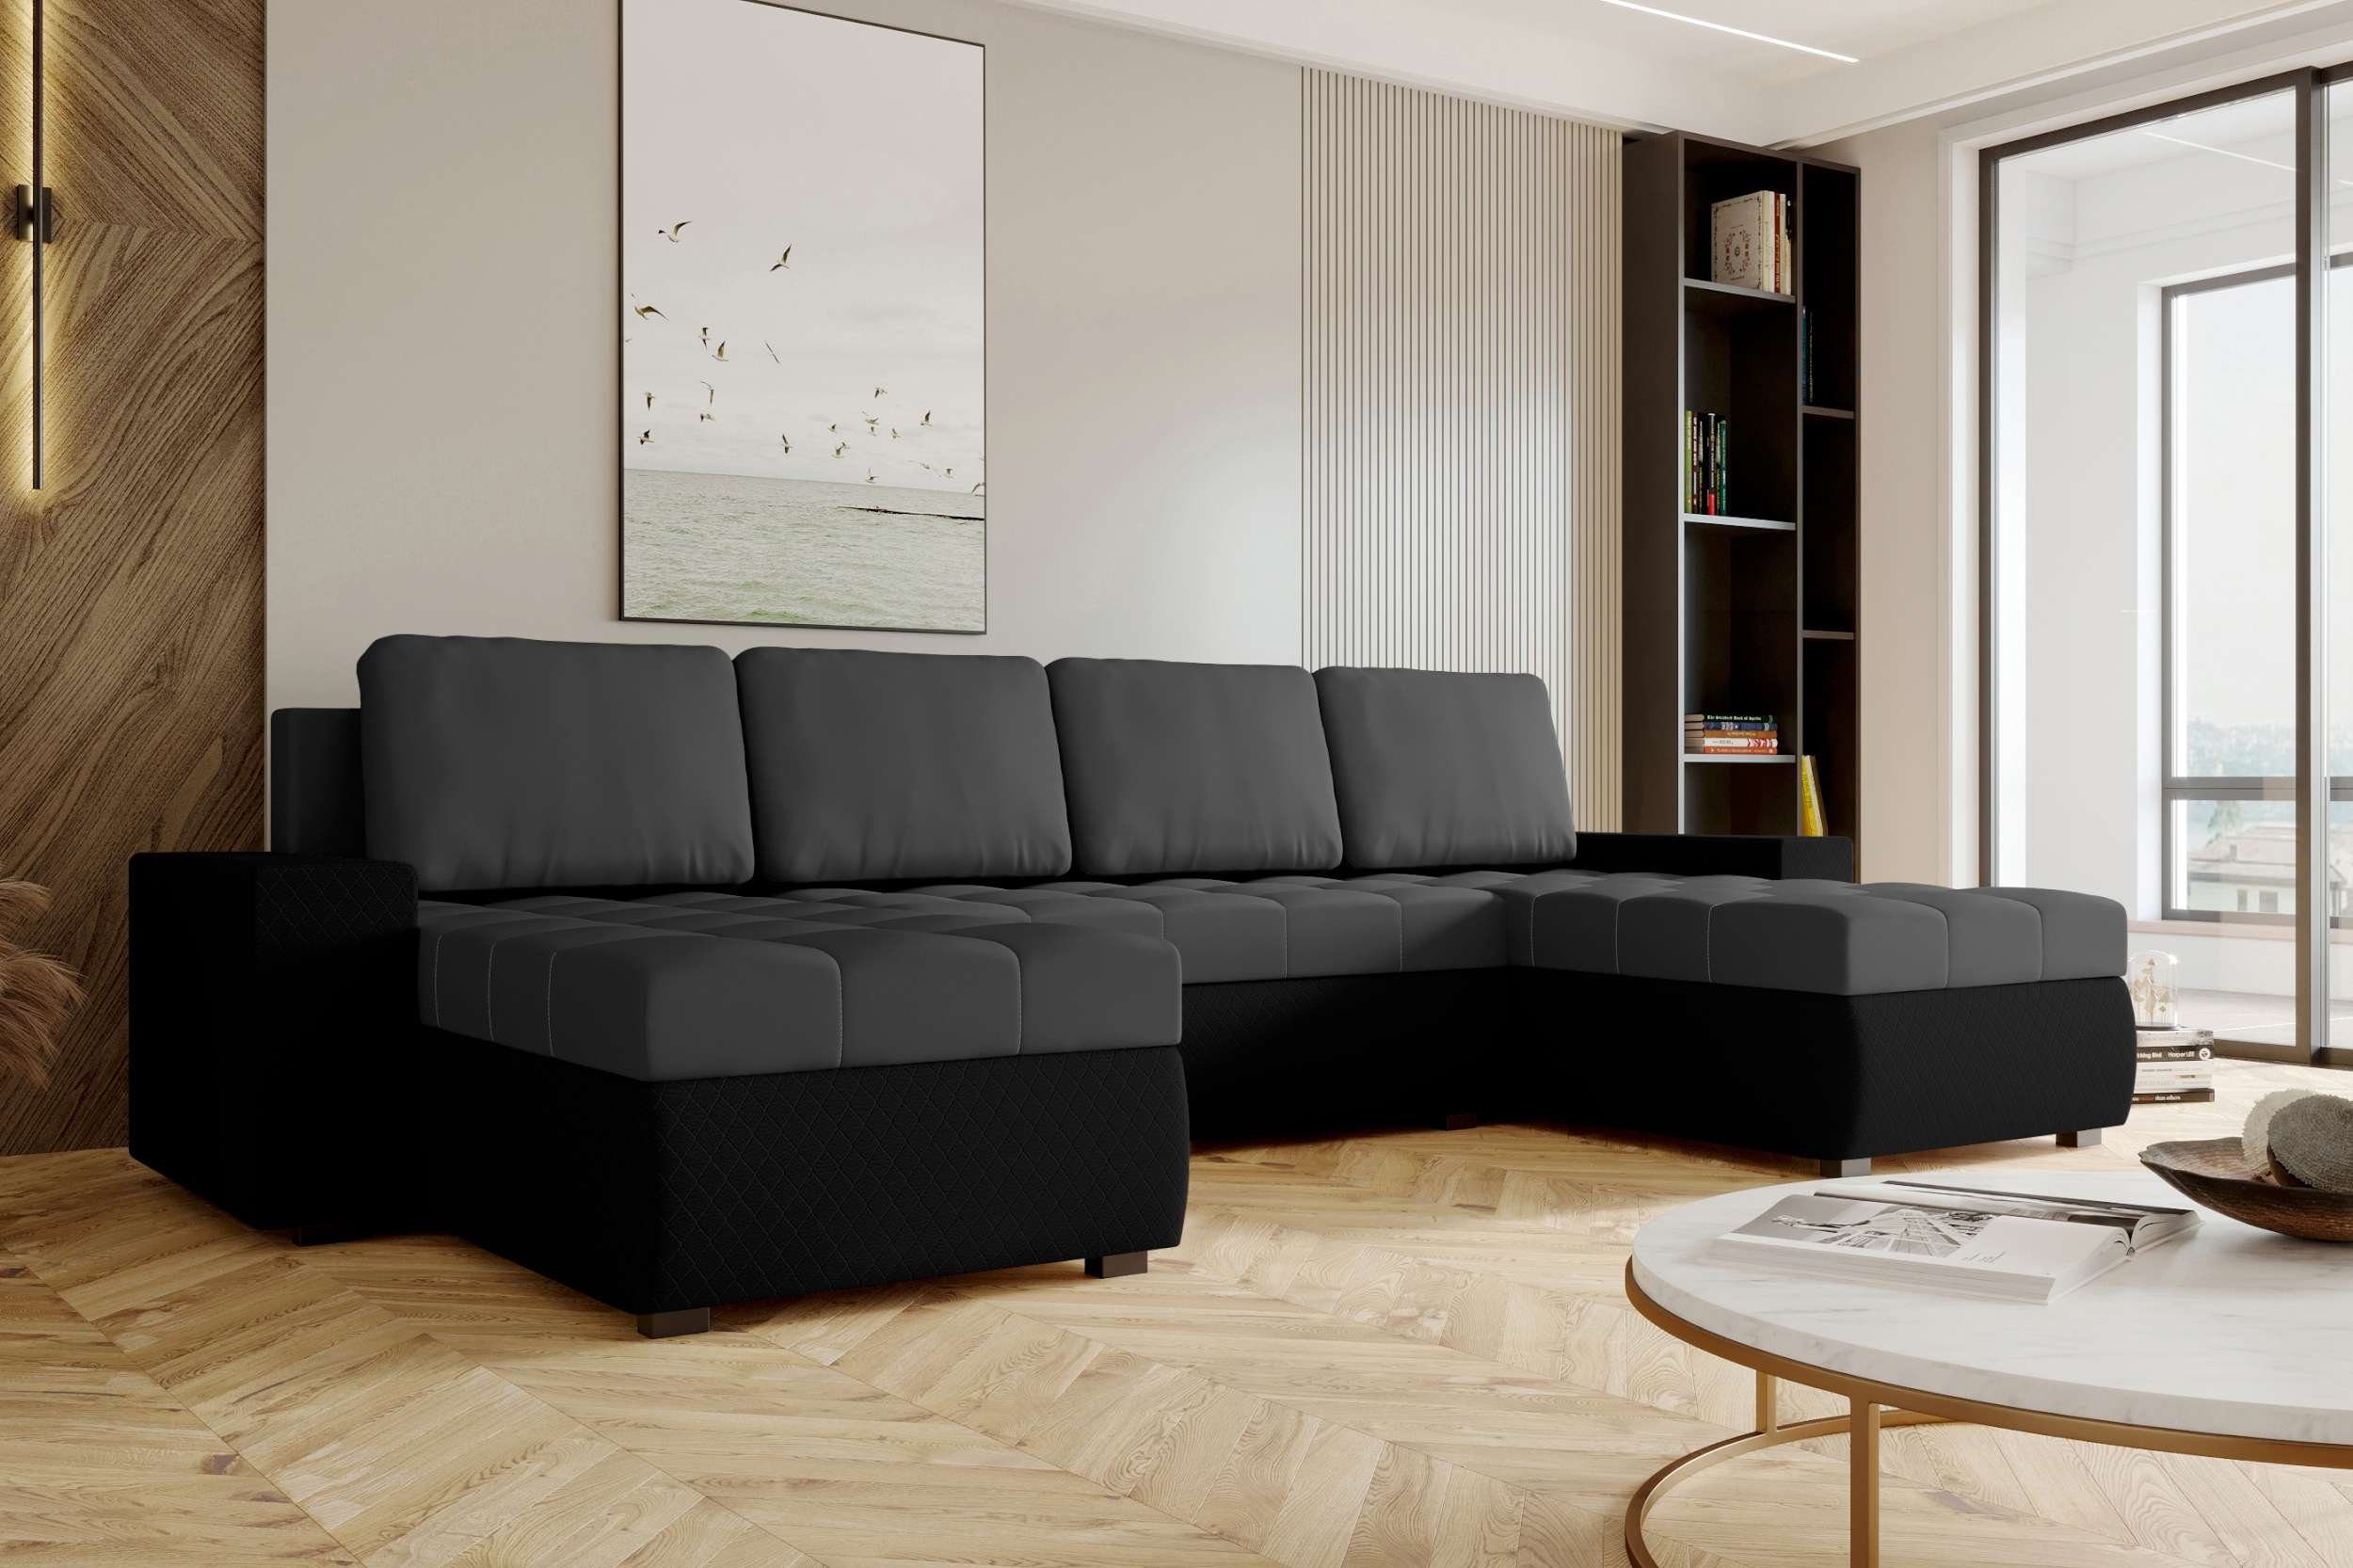 Stylefy Wohnlandschaft Amelia, U-Form, Eckcouch, Bettfunktion, Bettkasten, mit Sitzkomfort, mit Modern Design Sofa